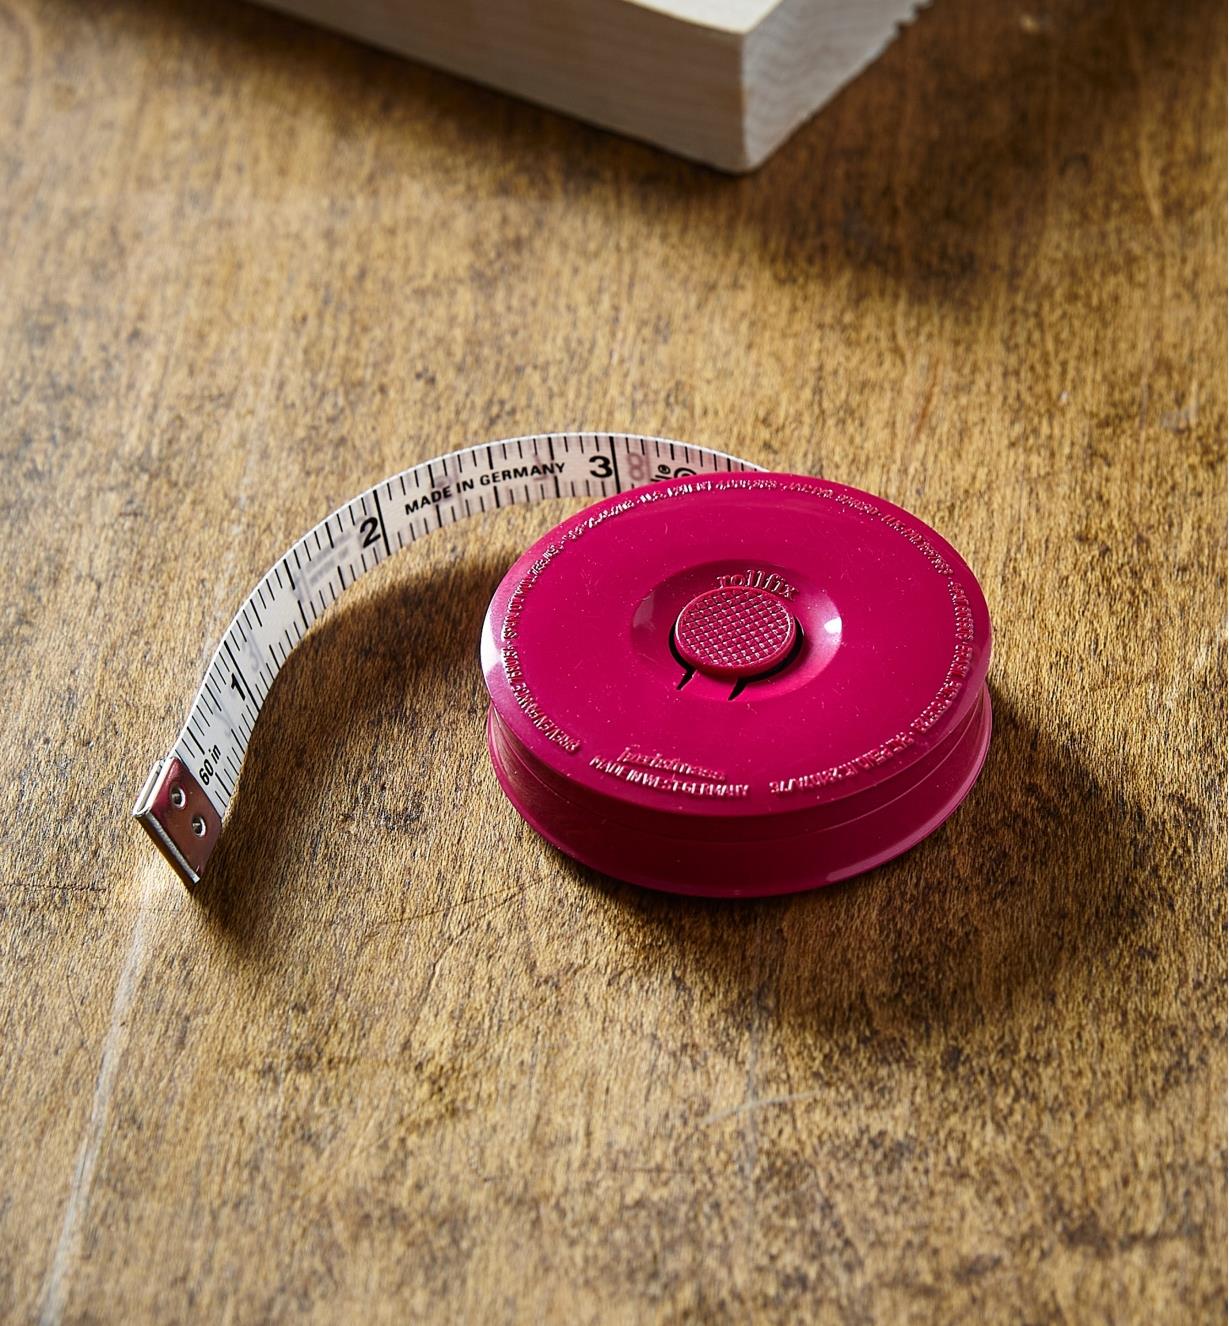 Ruban à mesurer de poche sur une table près d'un bout de bois